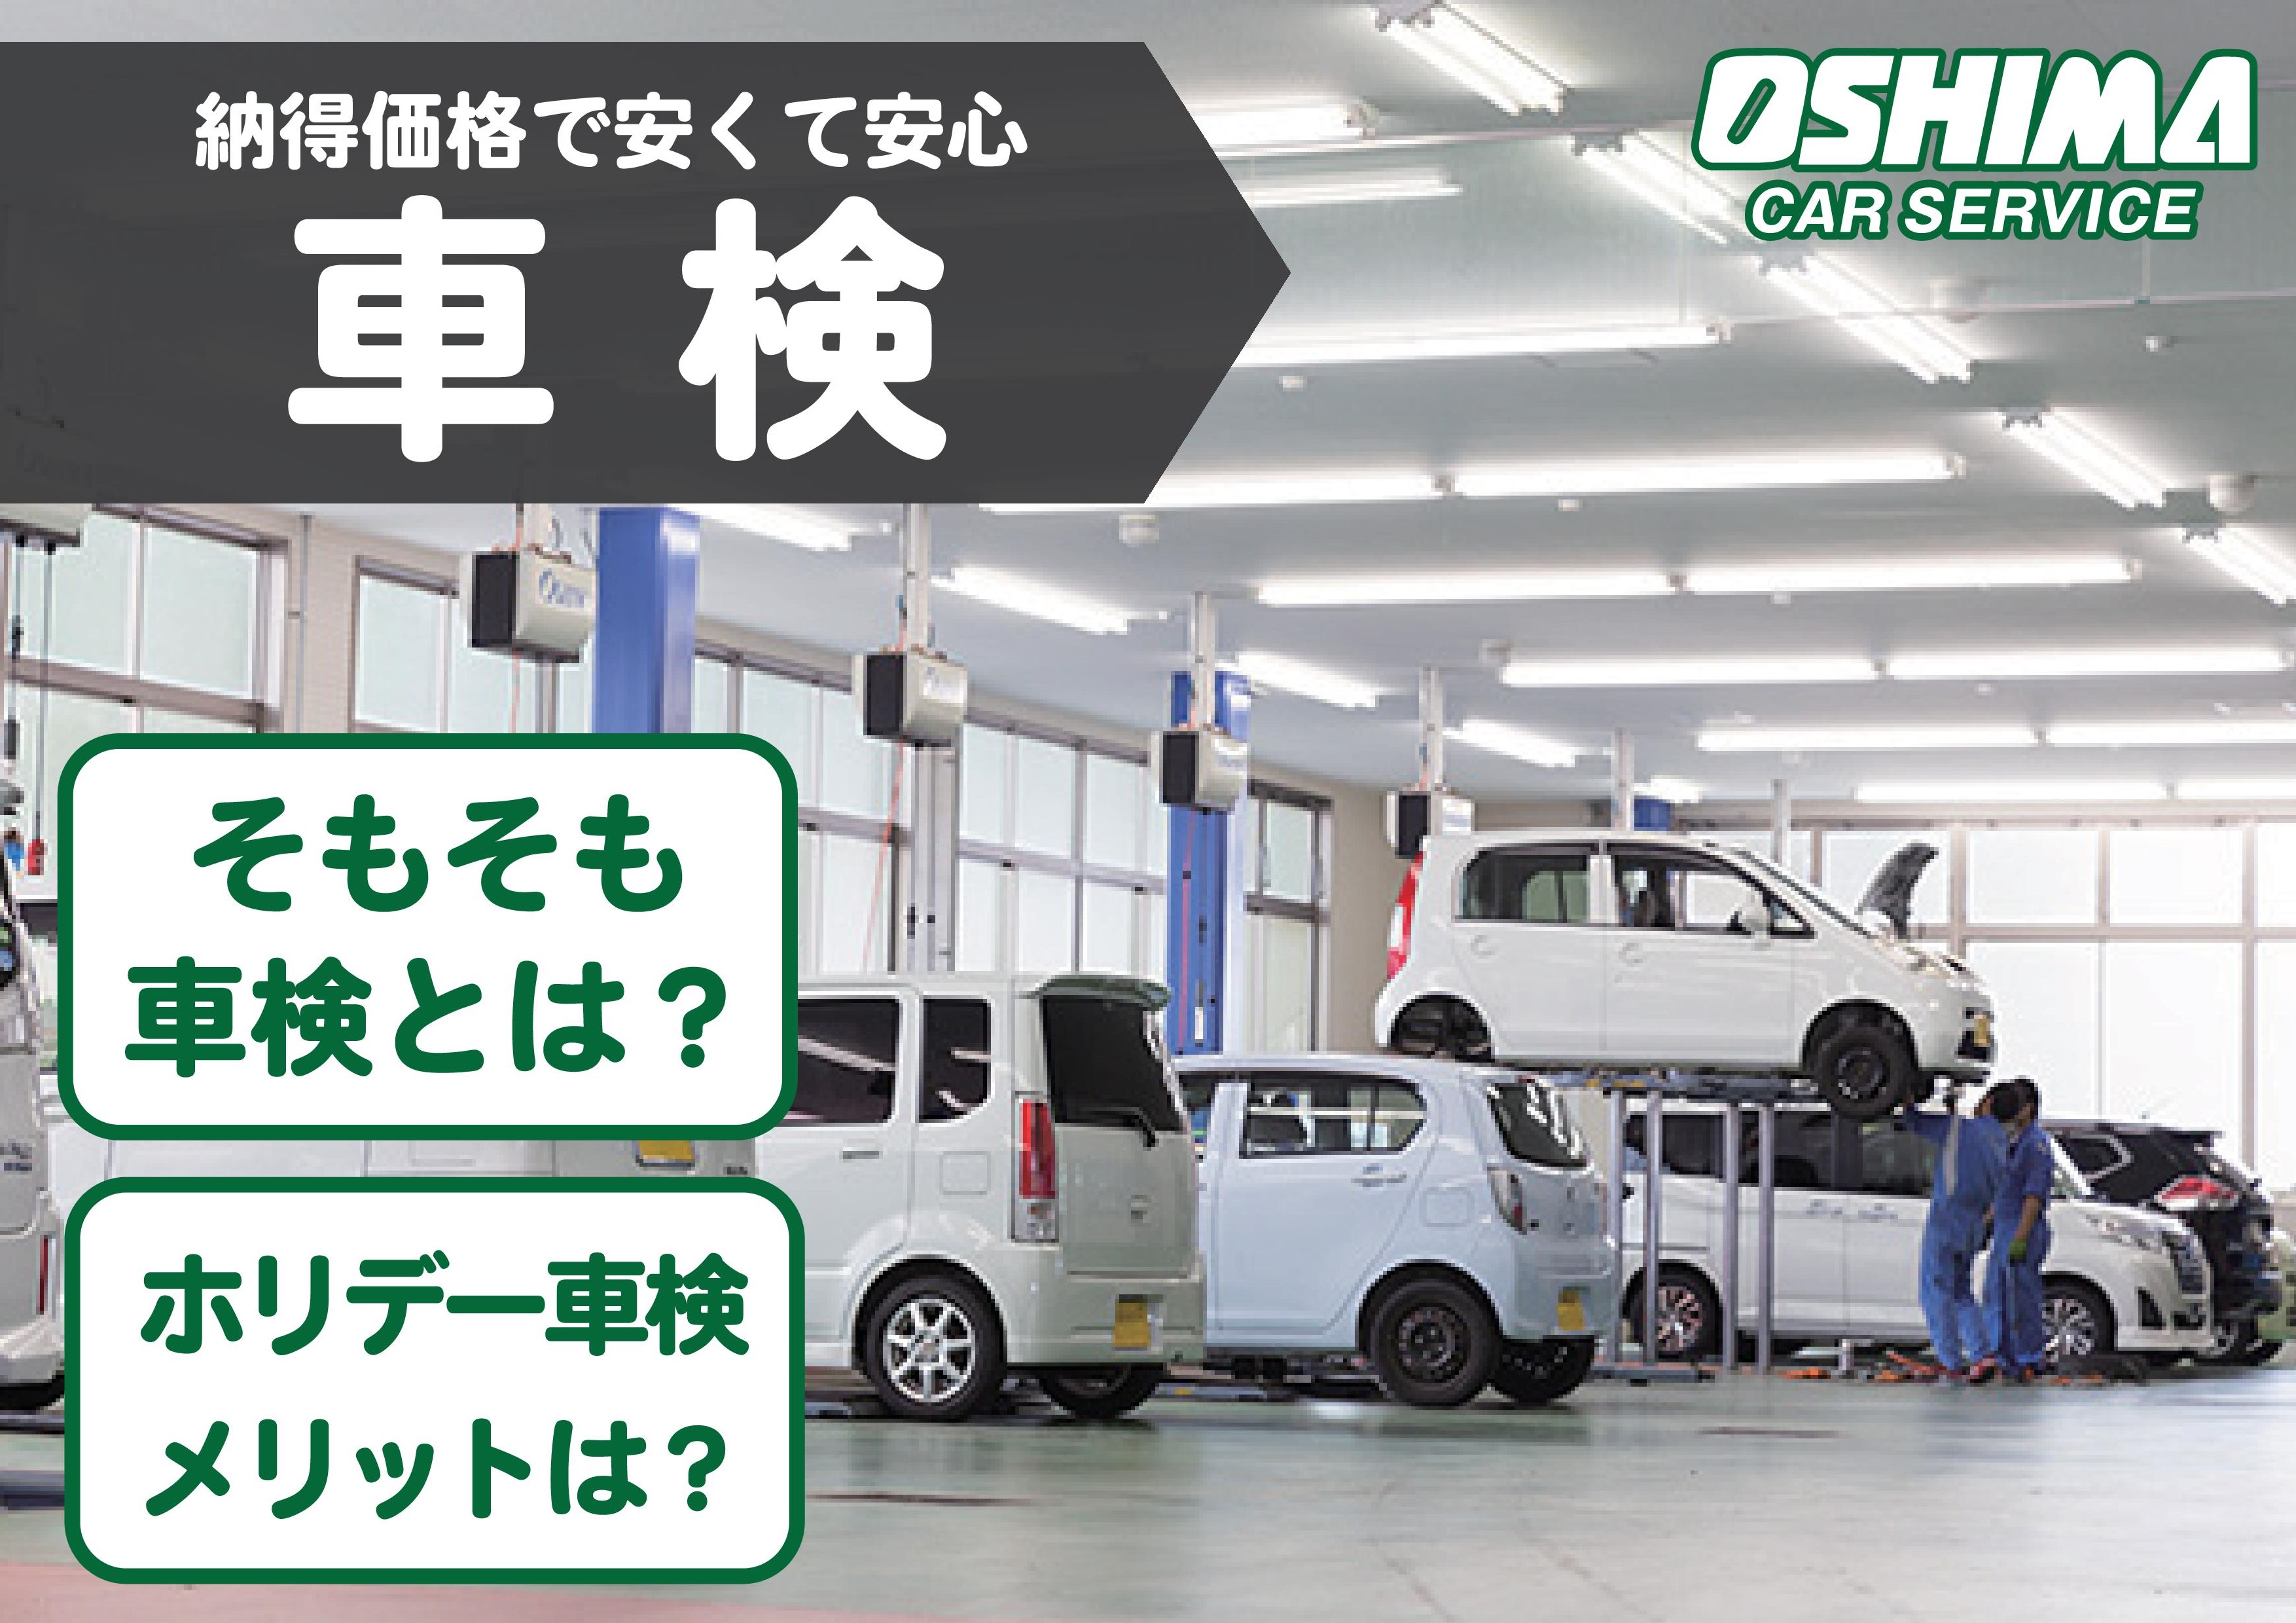 福知山で車検なら「大嶋カーサービス」納得価格で早くて安心｜ネットで簡単予約